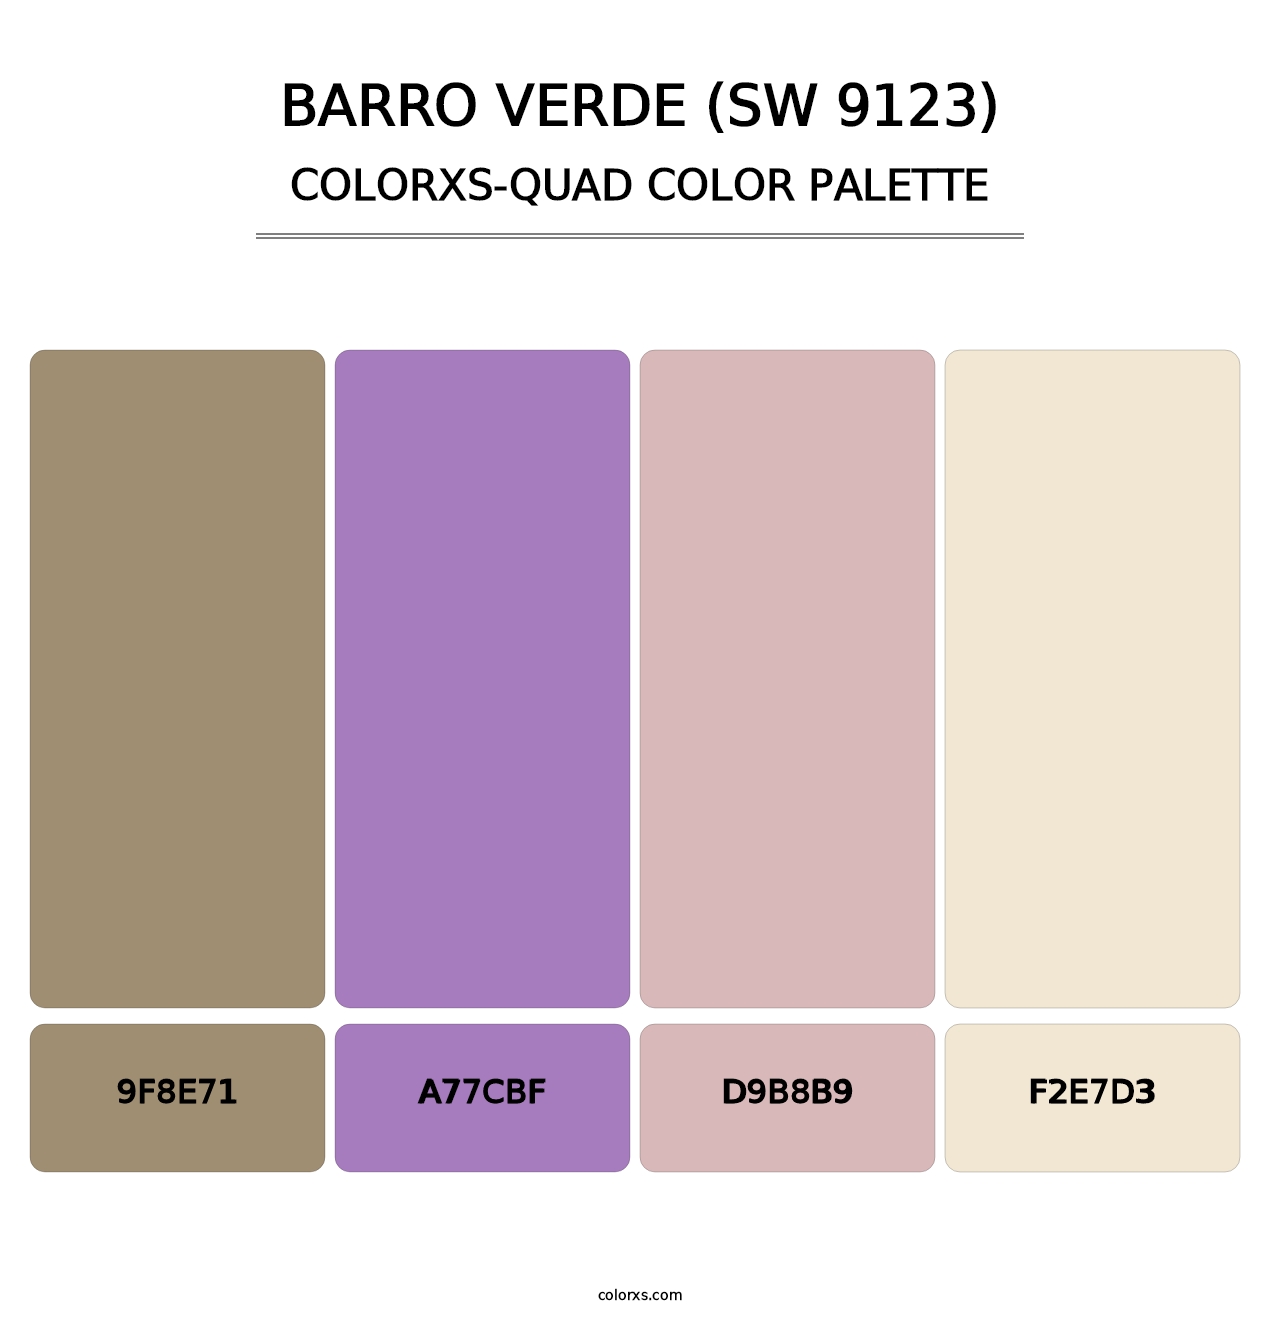 Barro Verde (SW 9123) - Colorxs Quad Palette